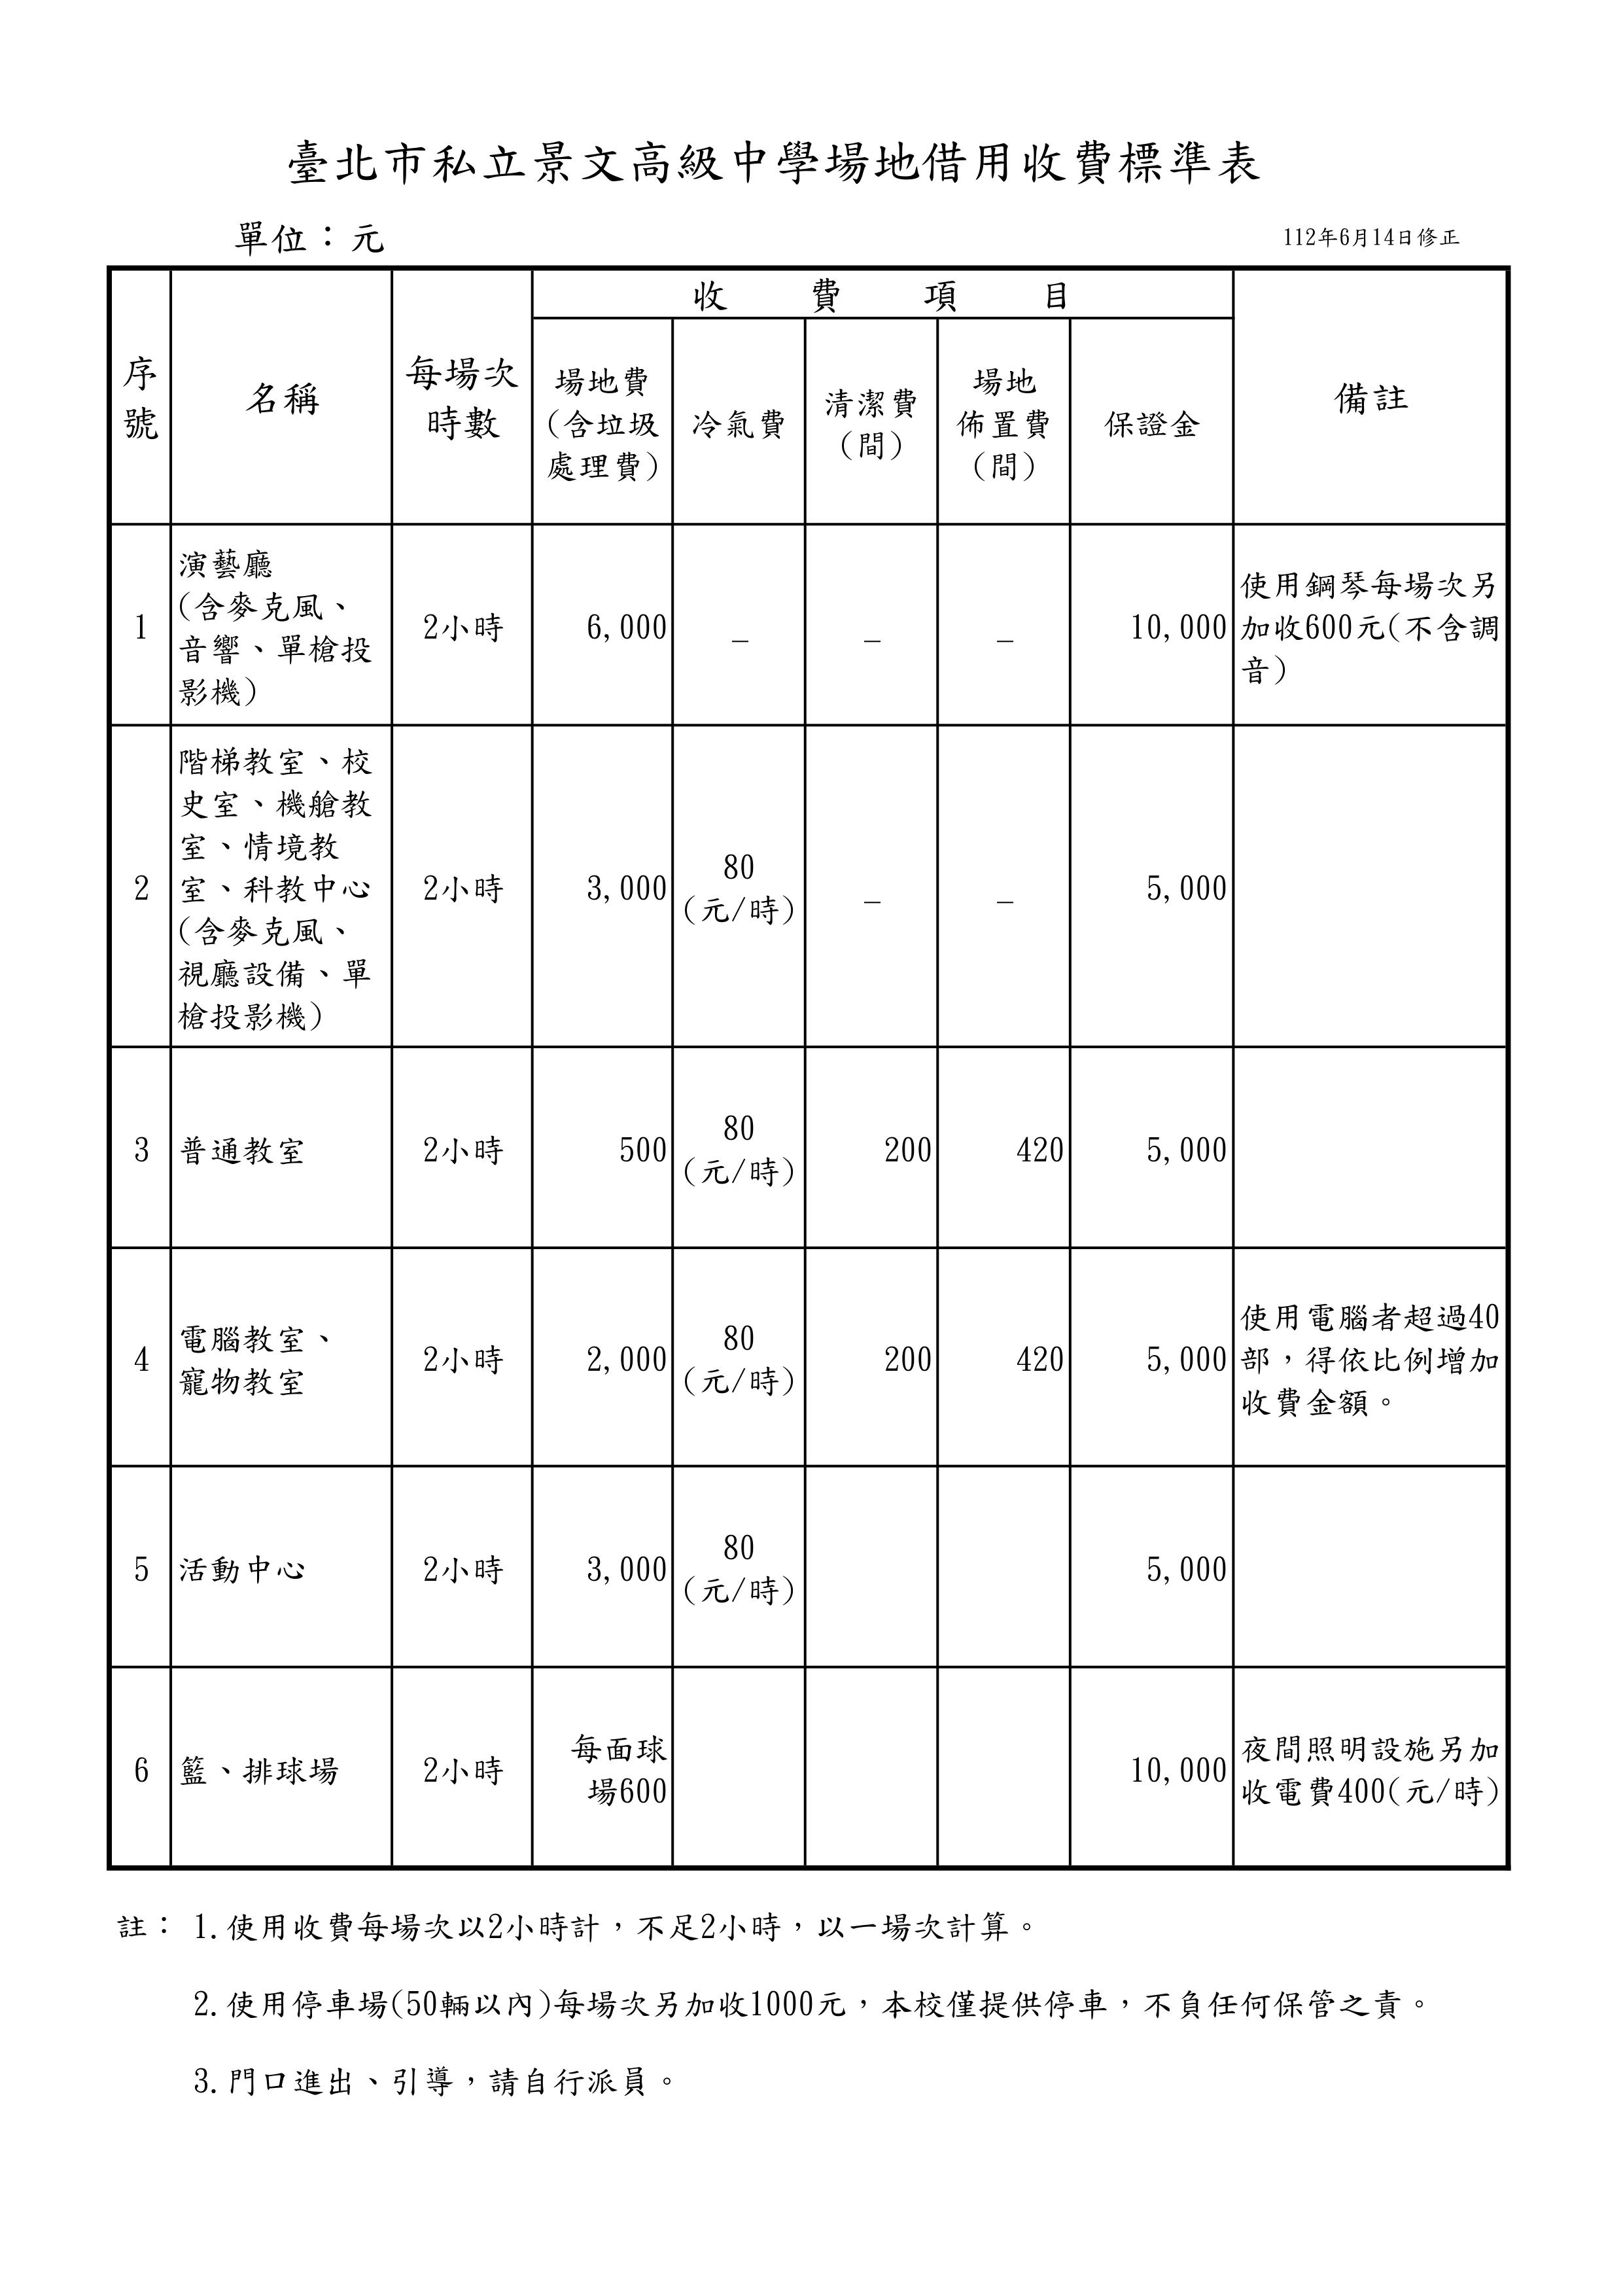 臺北市私立景文高級中學場地借用收費標準表